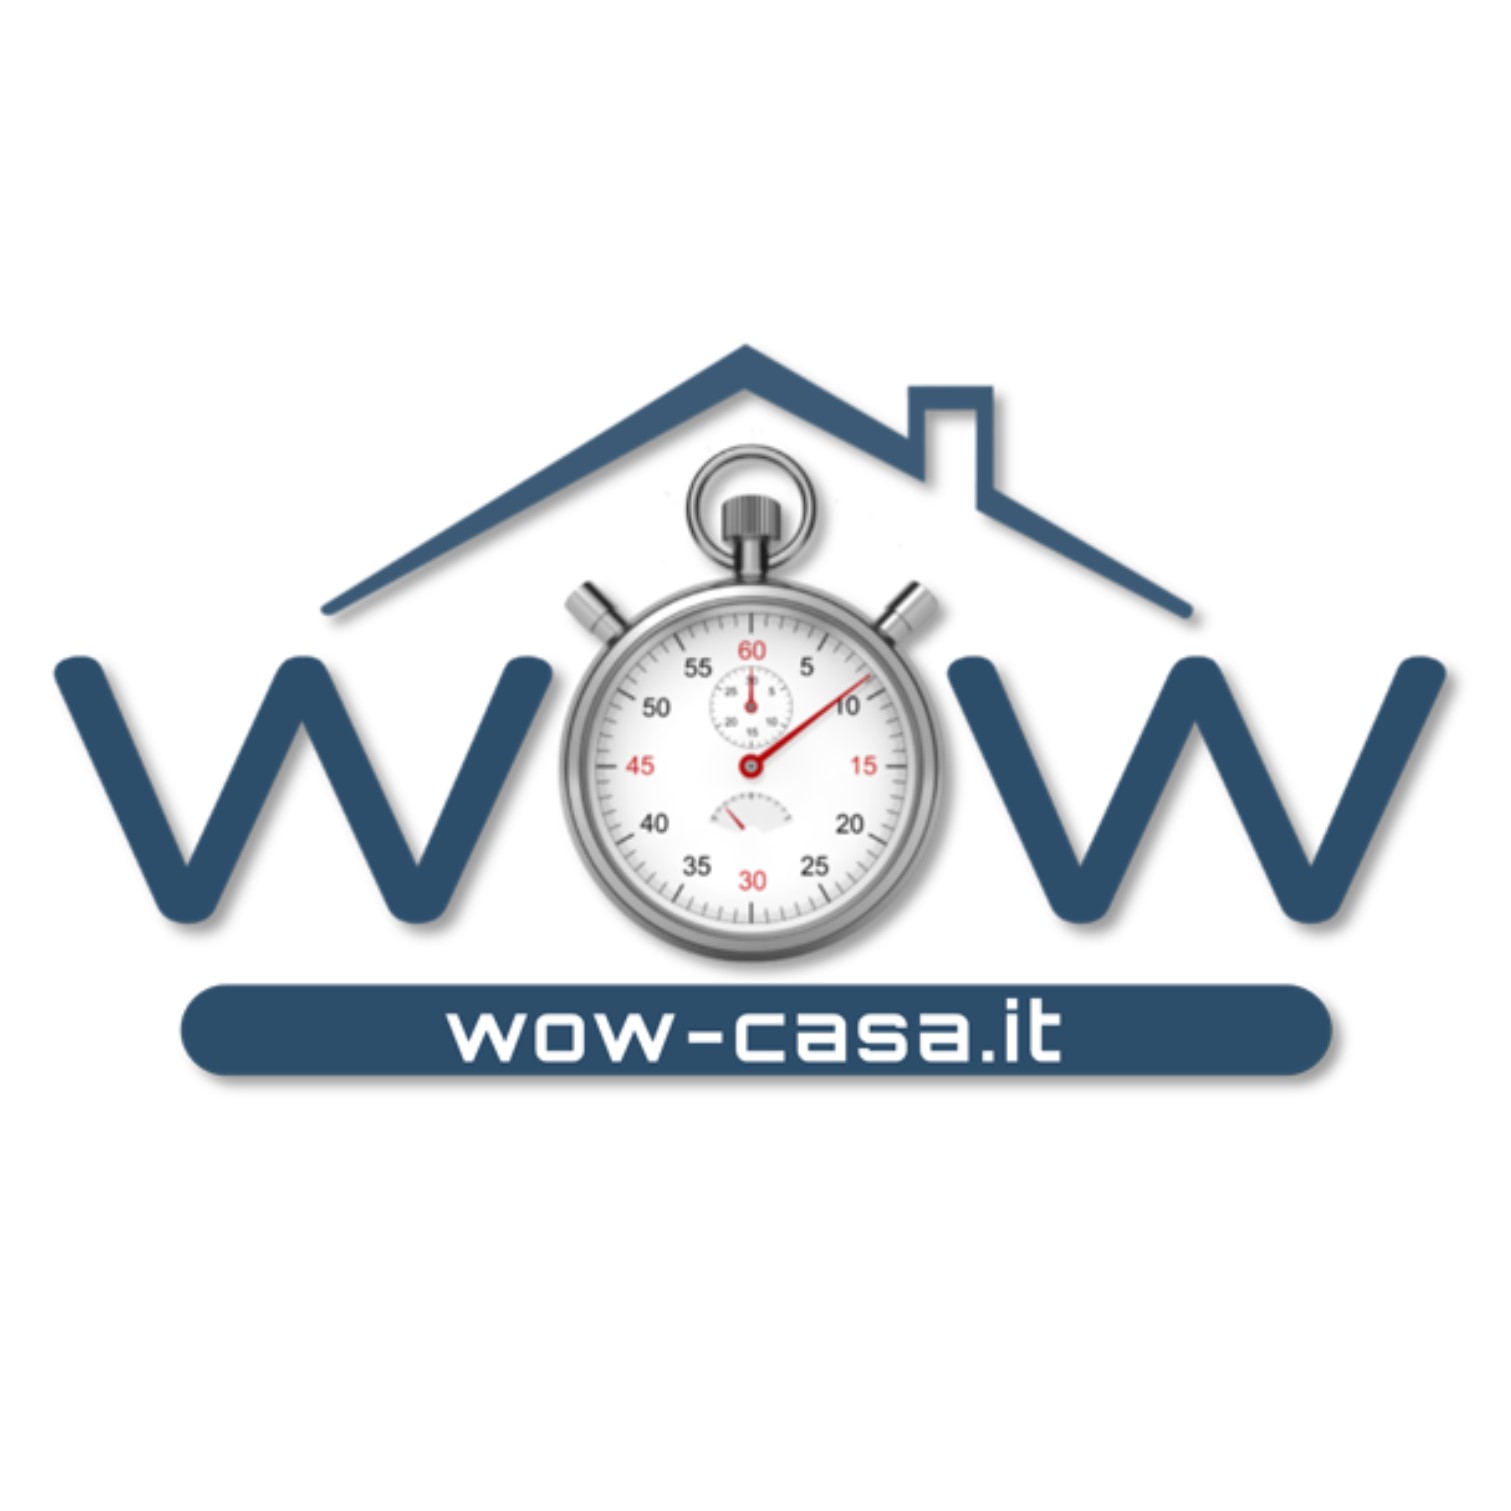 Logo wow-casa nuovo